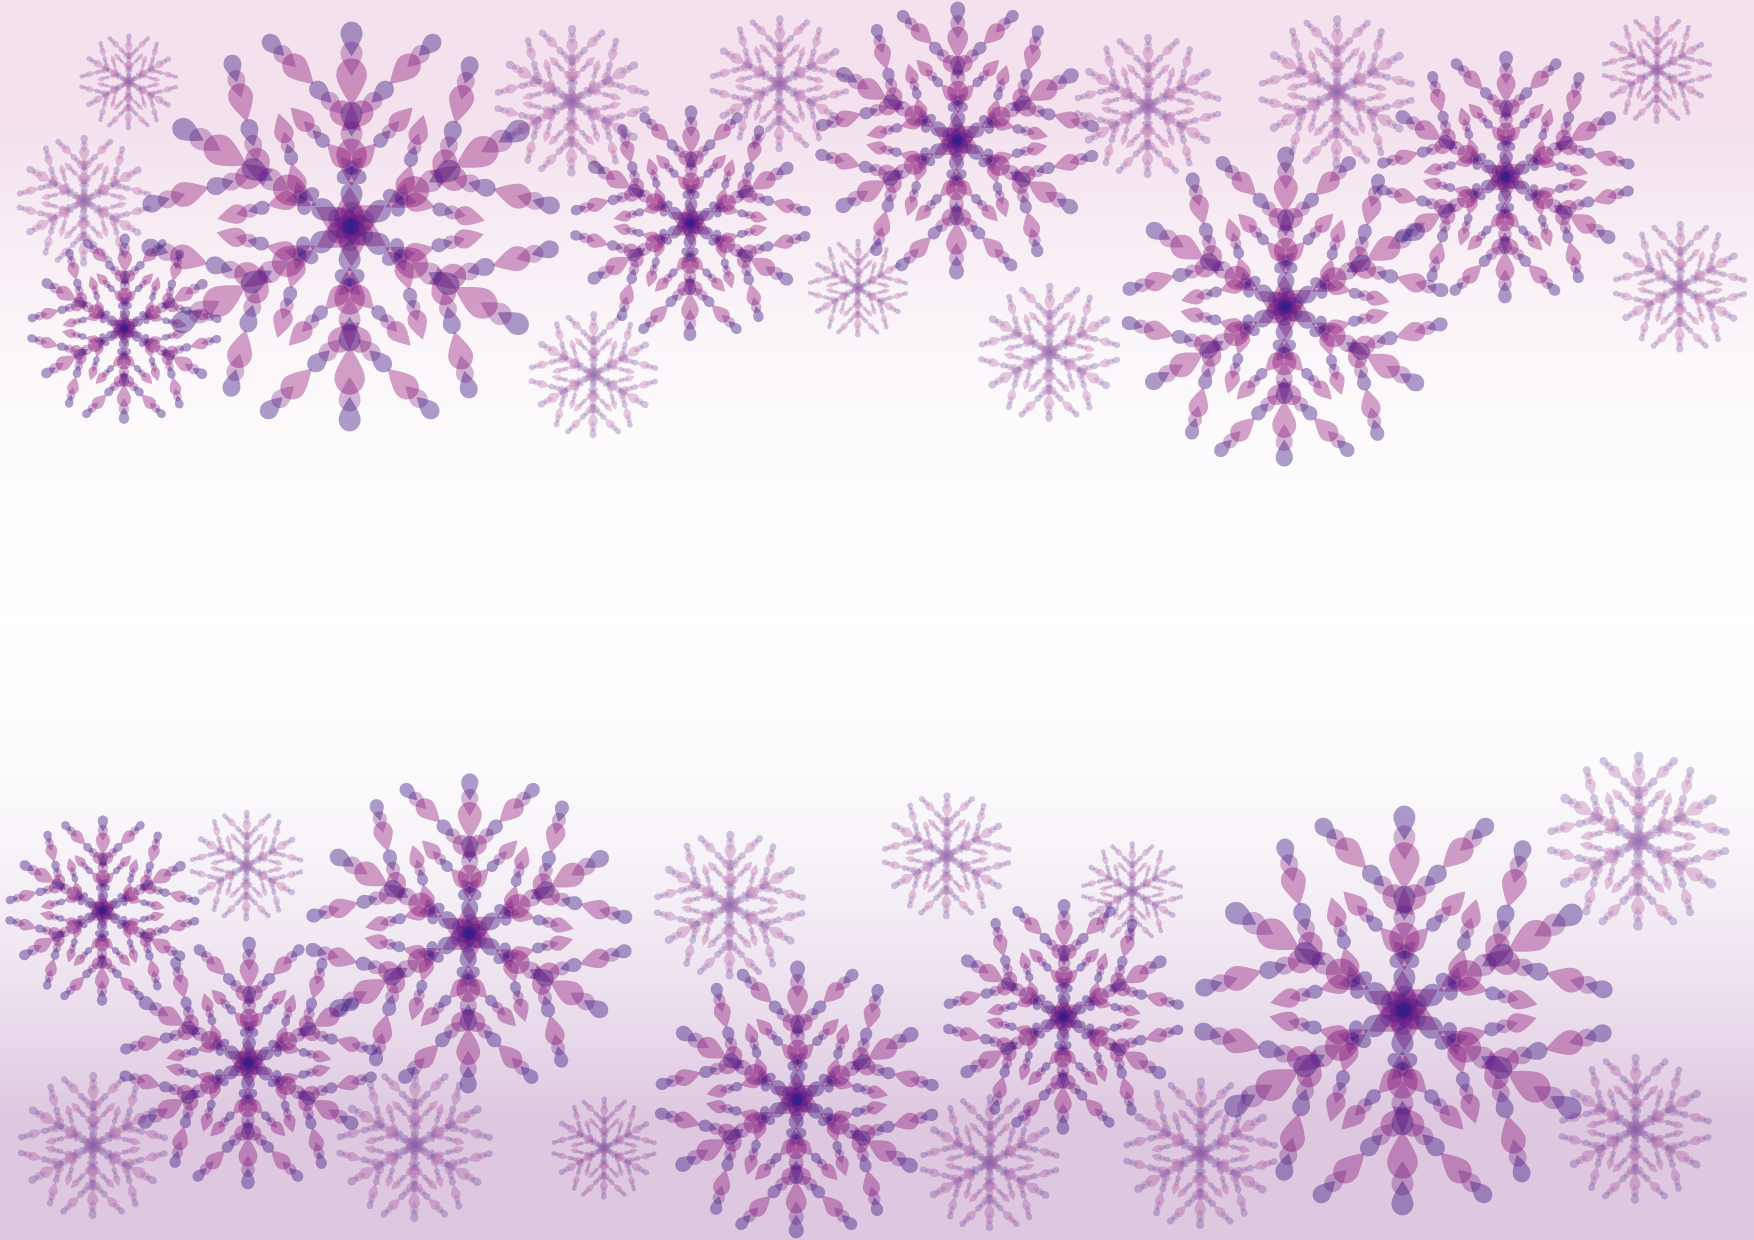 可愛いイラスト無料 雪の結晶 紫色 背景 Free Illustration Snowflakes Purple Background 公式 イラスト素材サイト イラストダウンロード